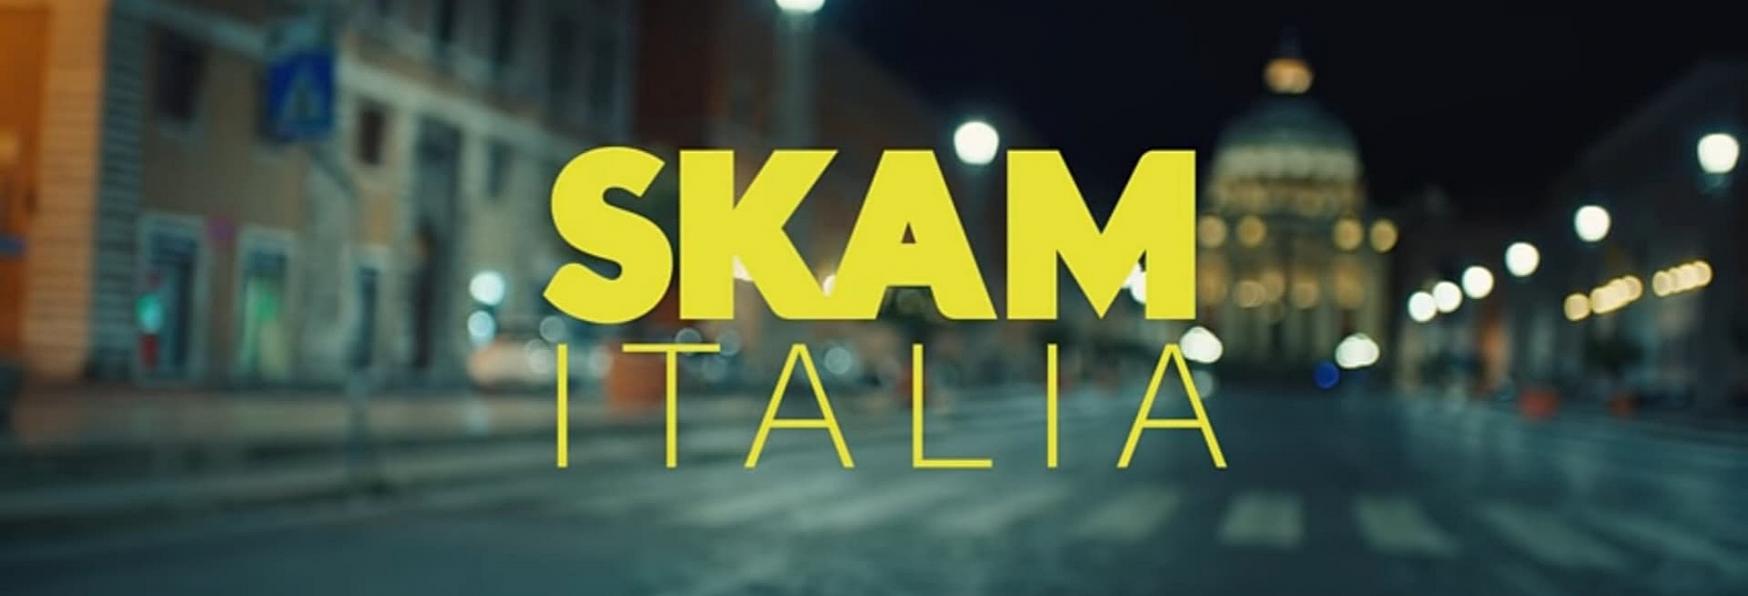 SKAM Italia 6: il Teaser e la Data di Uscita della nuova Stagione